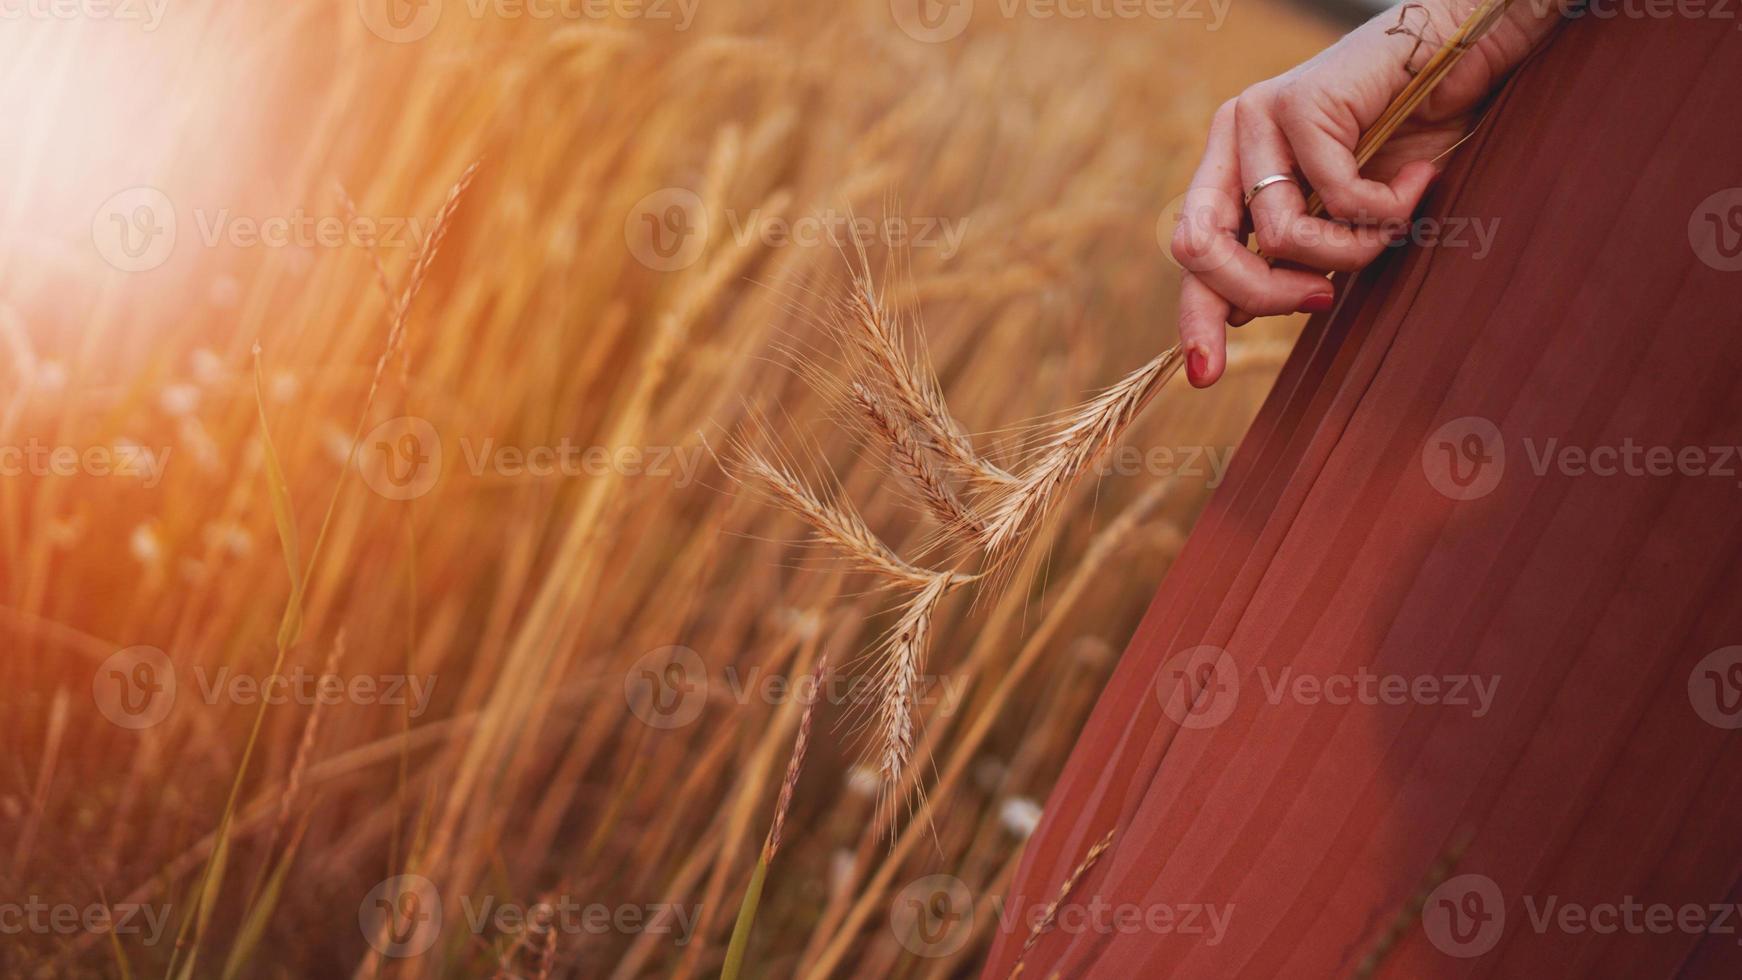 donna in un campo di grano, donna tiene in mano una spiga di grano foto